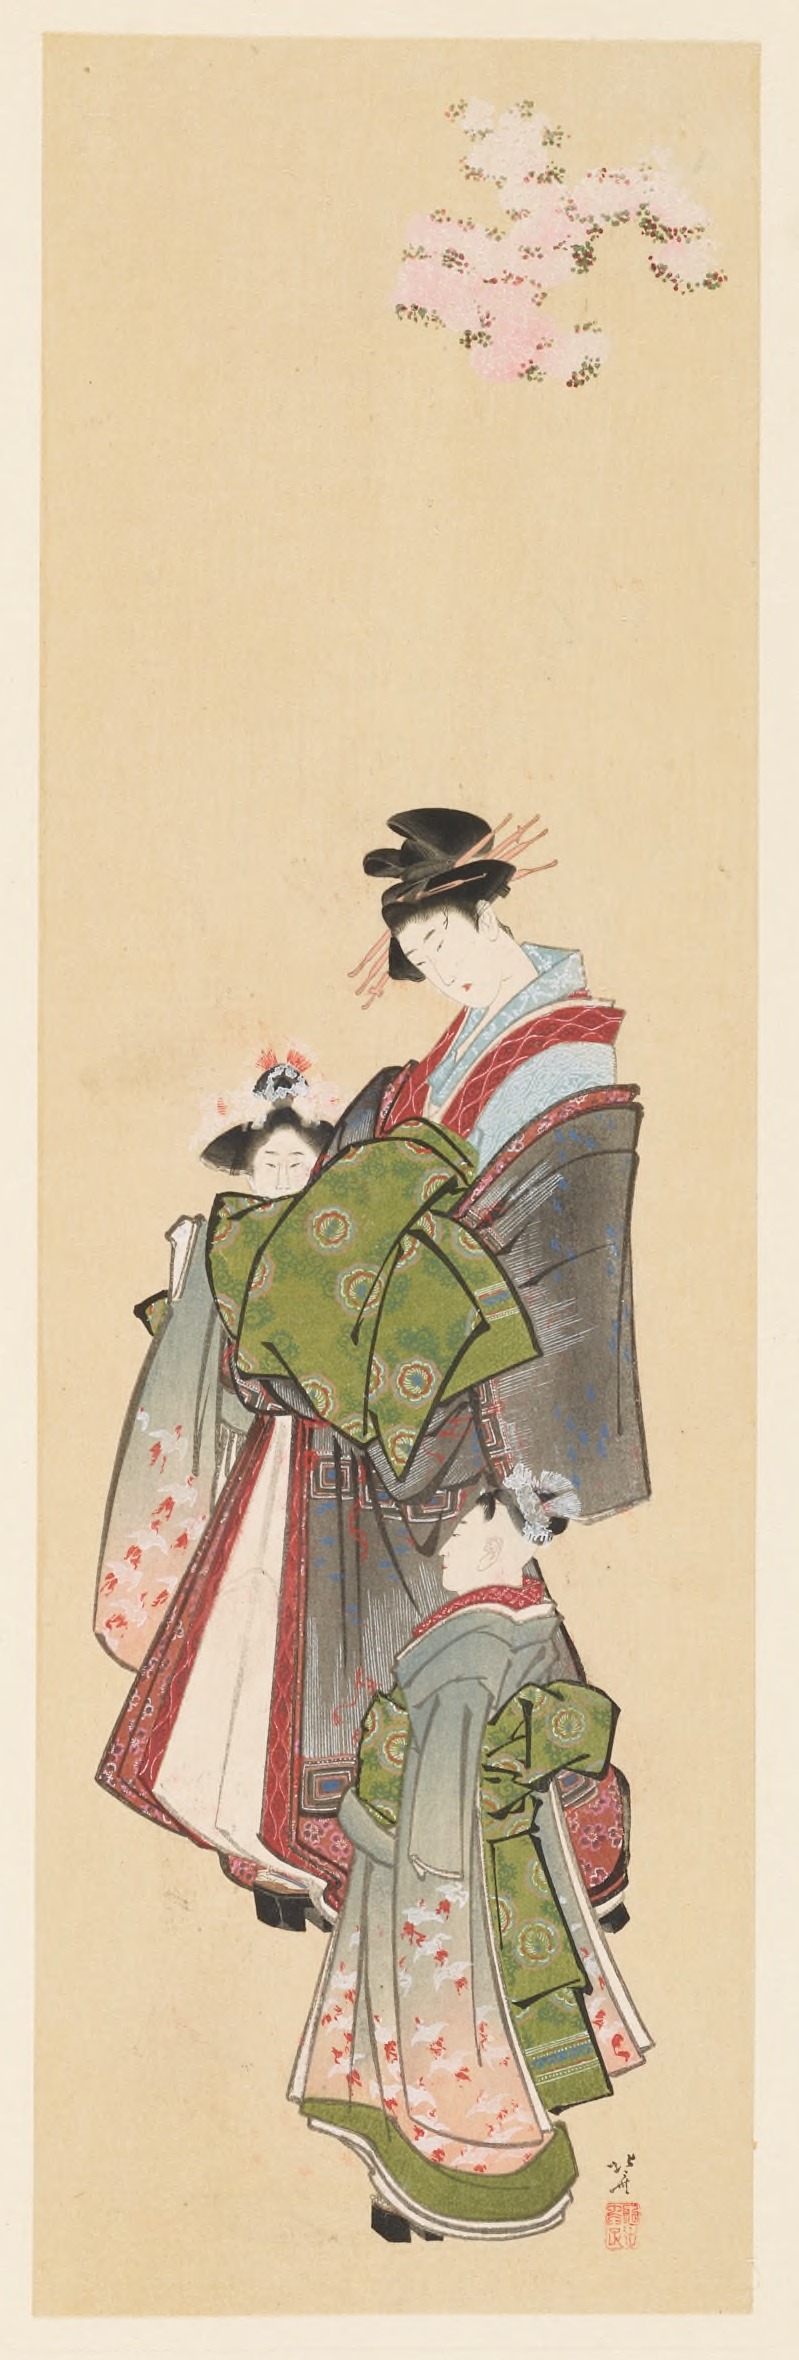 Shiichi Tajima - Masterpieces selected from the Ukiyoyé School, Pl.27